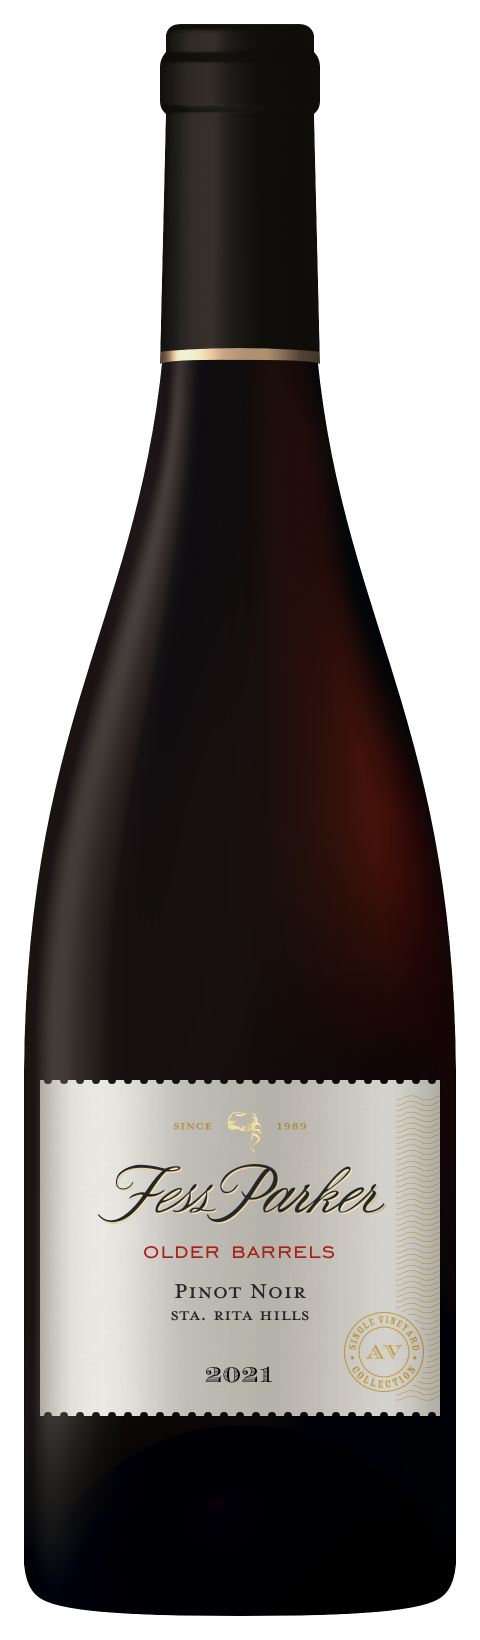 Bottle shot of Older Barrels Pinot Noir